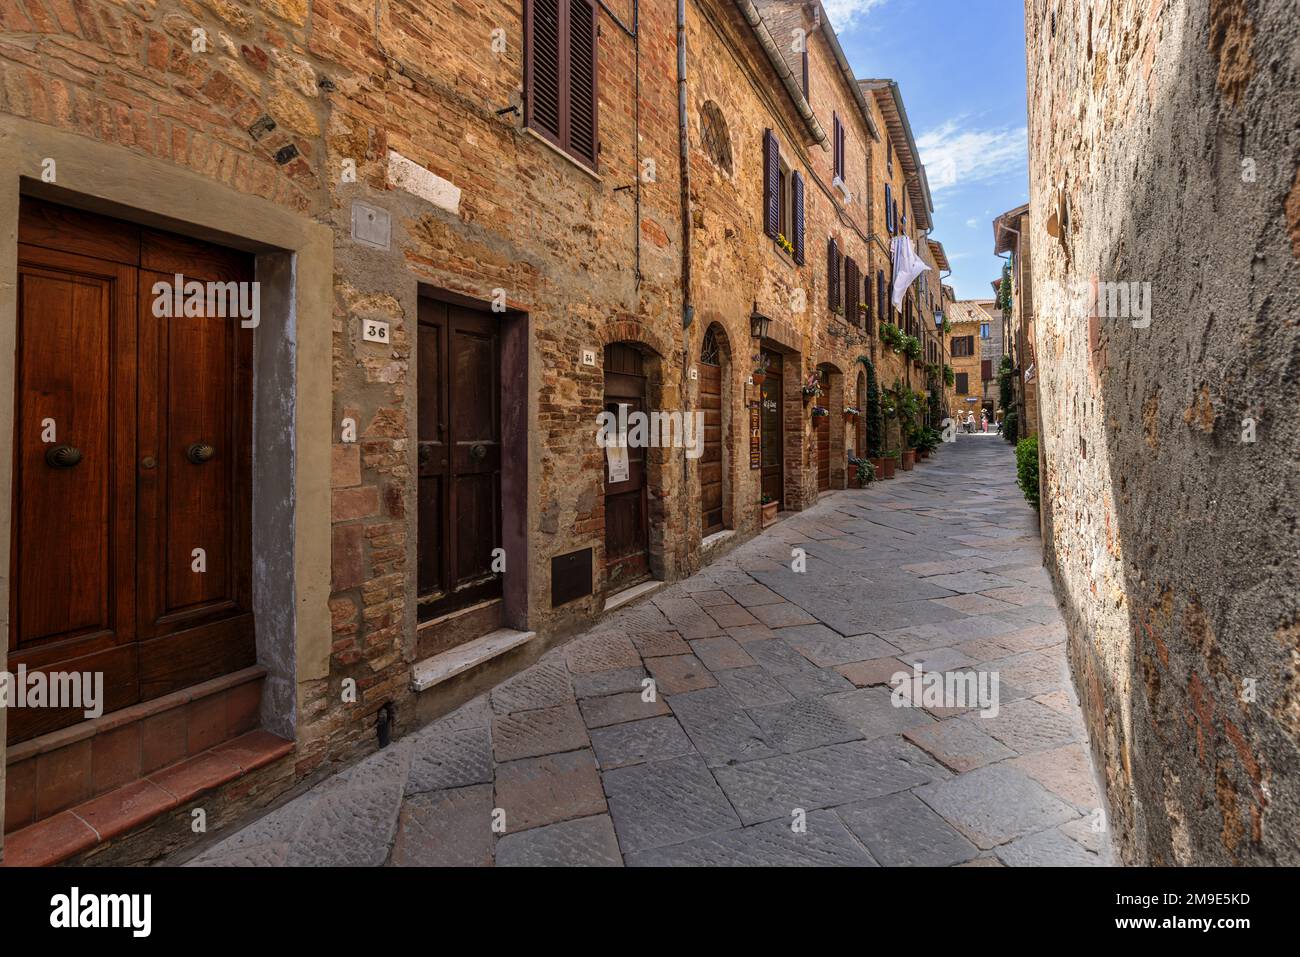 Rues de la ville historique de Pienza dans le Val d'Orcia en Toscane, Italie. Banque D'Images